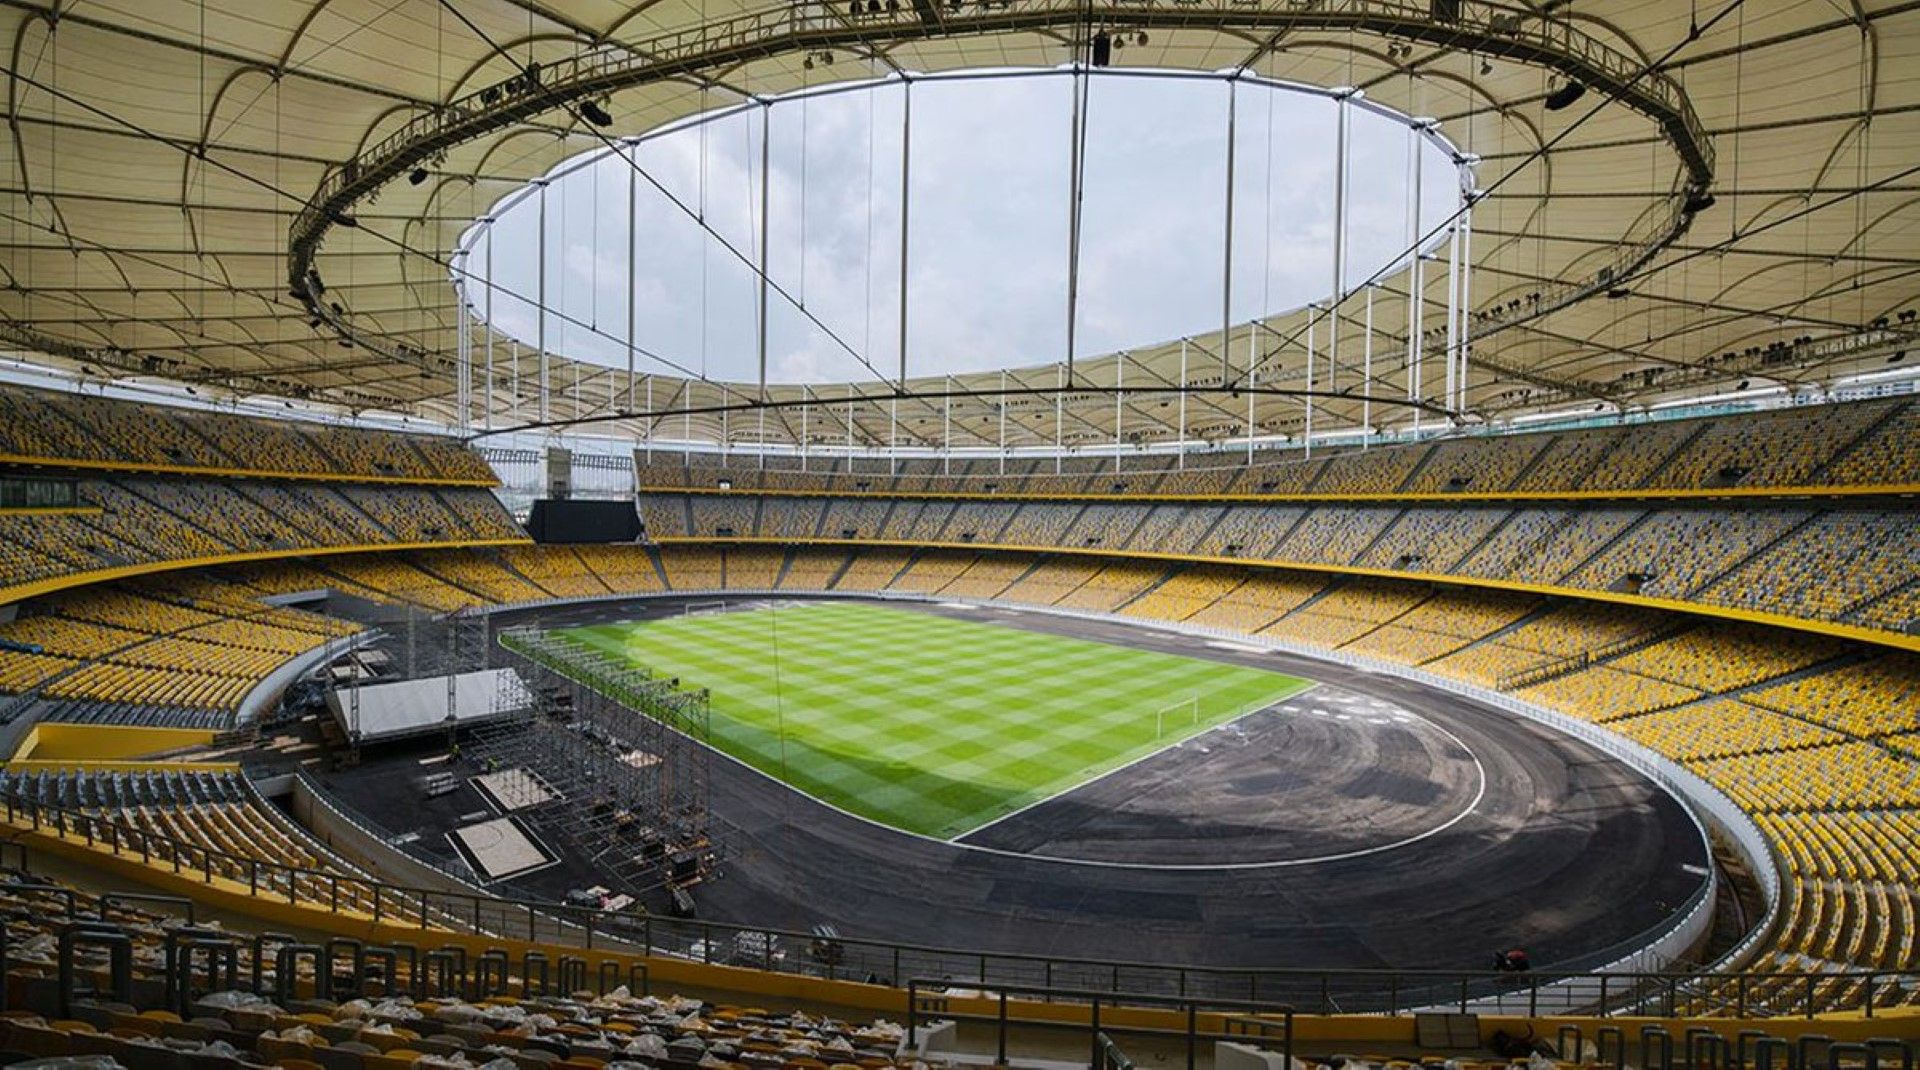 Това е националният стадион на Малайзия в Куала Лумпур. Събира 88 хиляди души след реновирането си през 2017-а. Построен е през 1996-а и приема всякакви спортни и обществени събития.